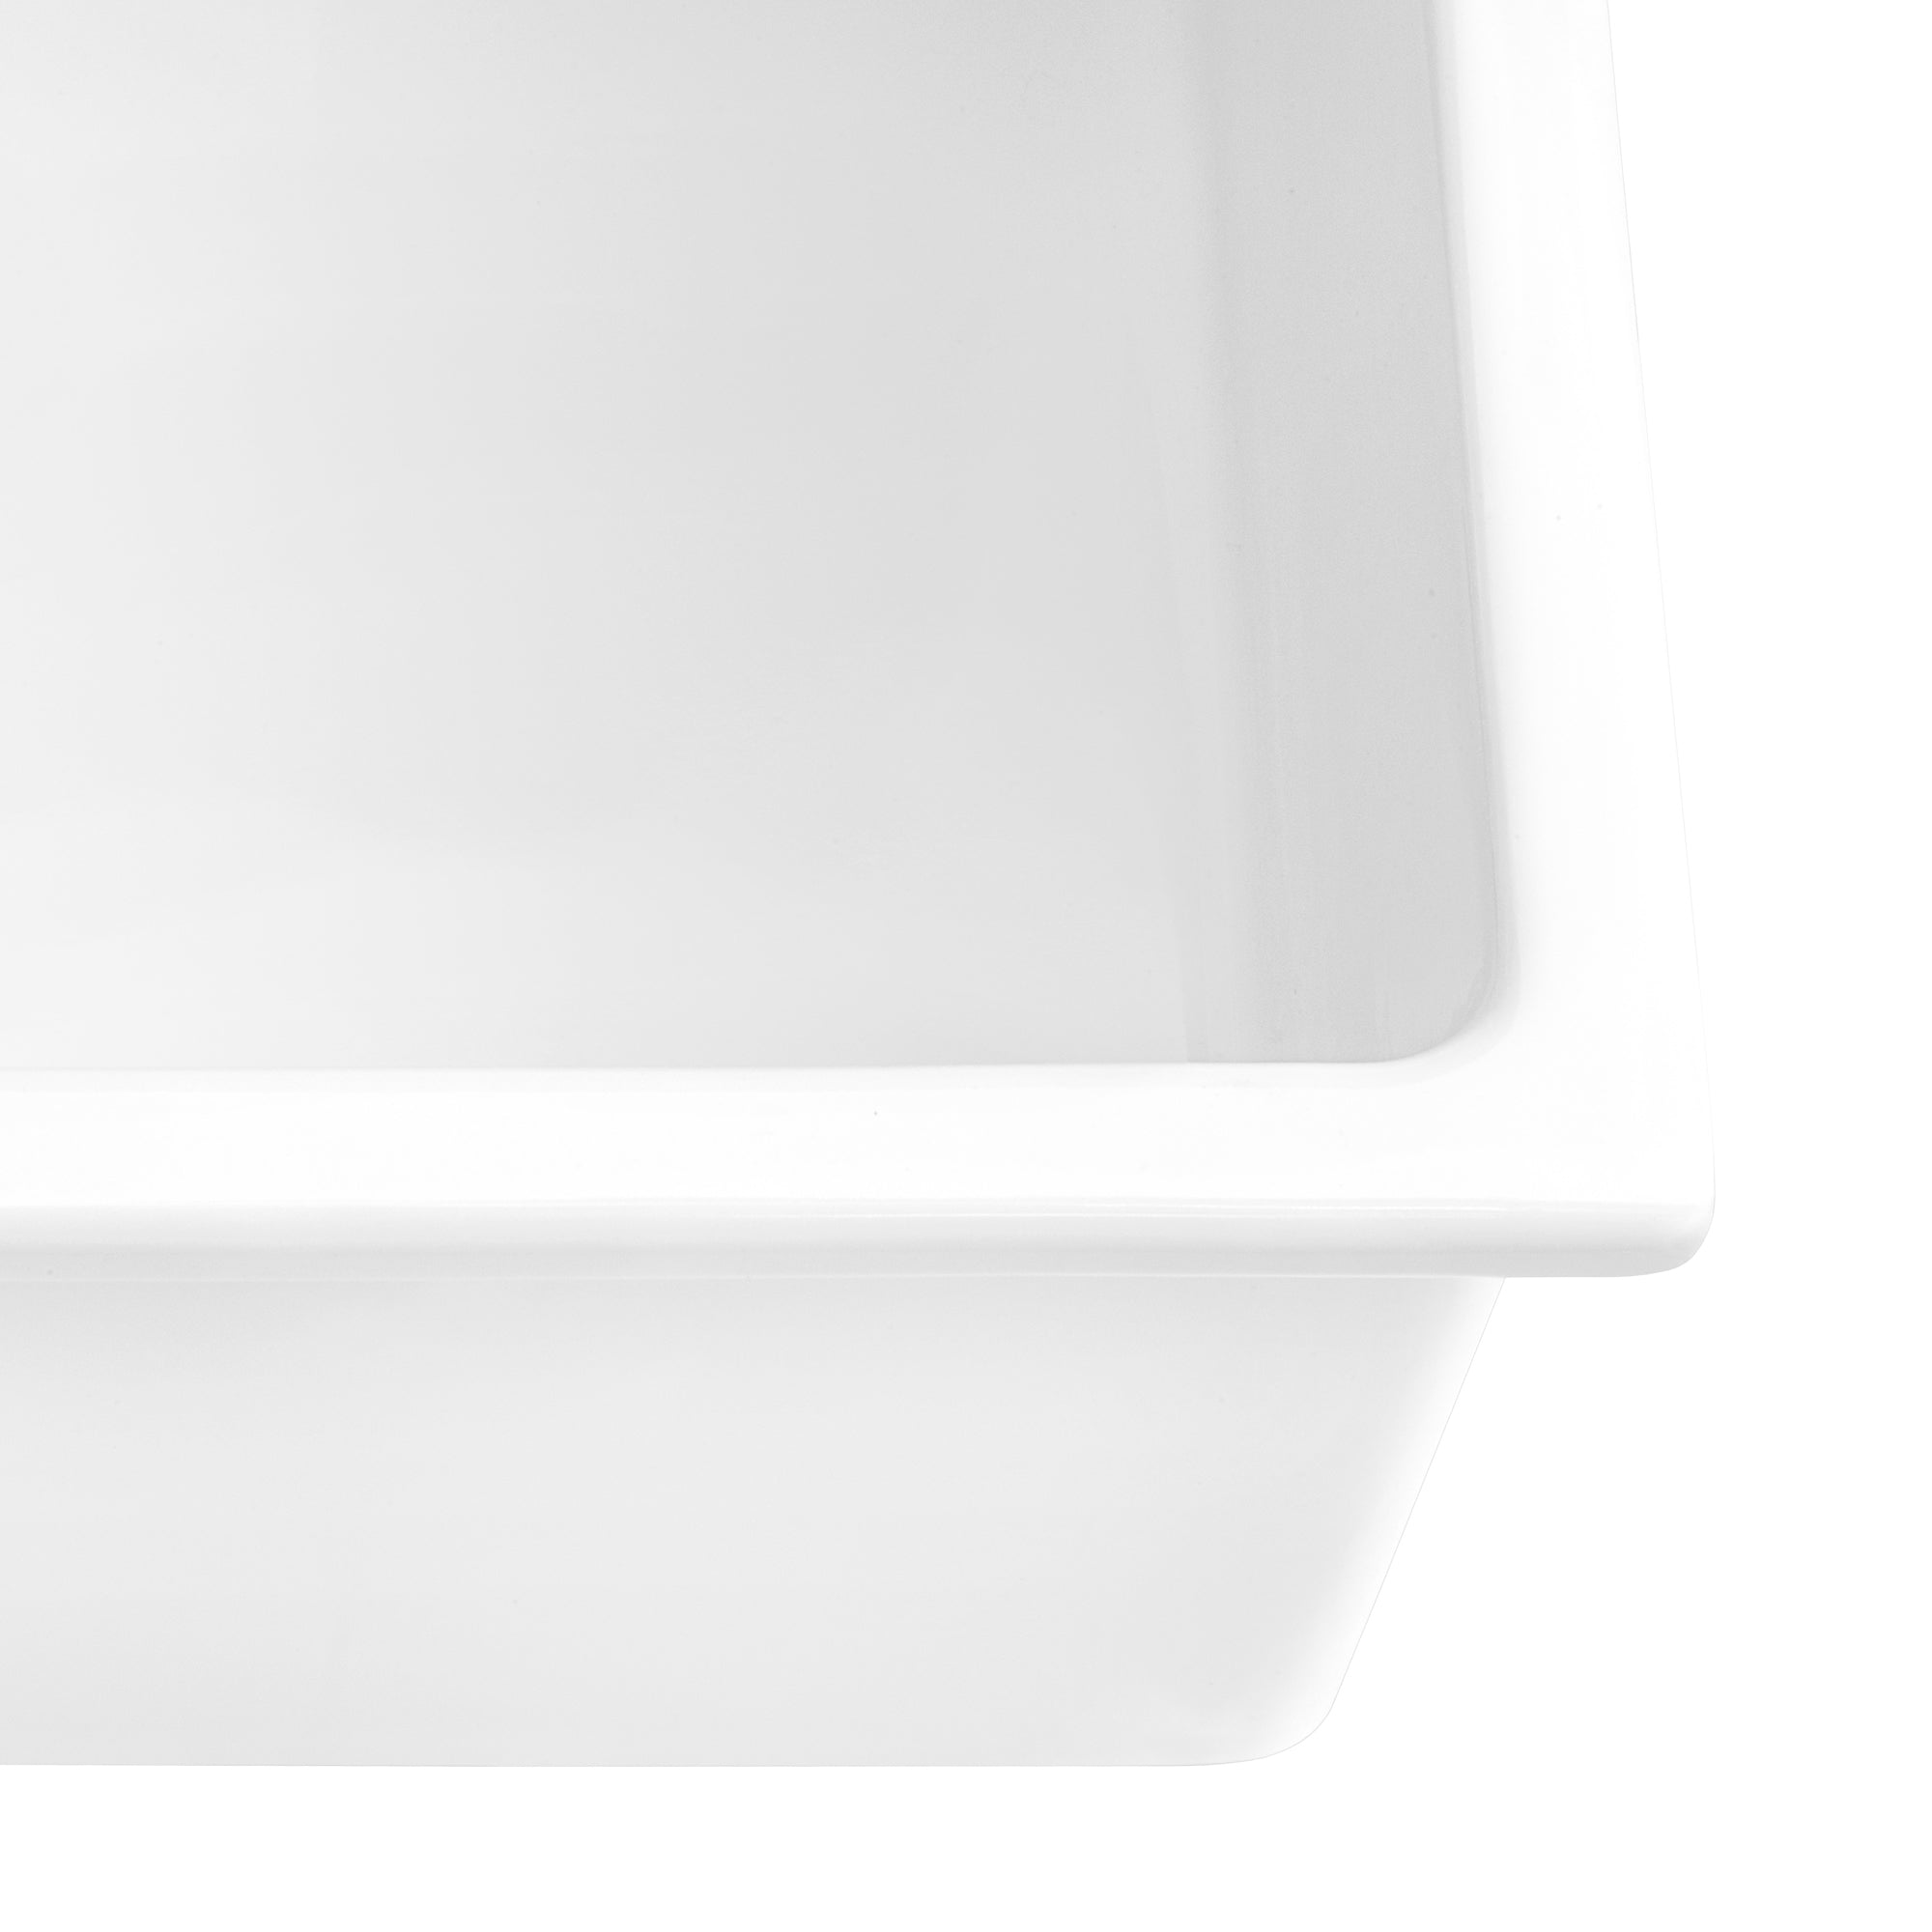 Ruvati 30" Fireclay Undermount / Topmount Single Bowl Kitchen Sink in White